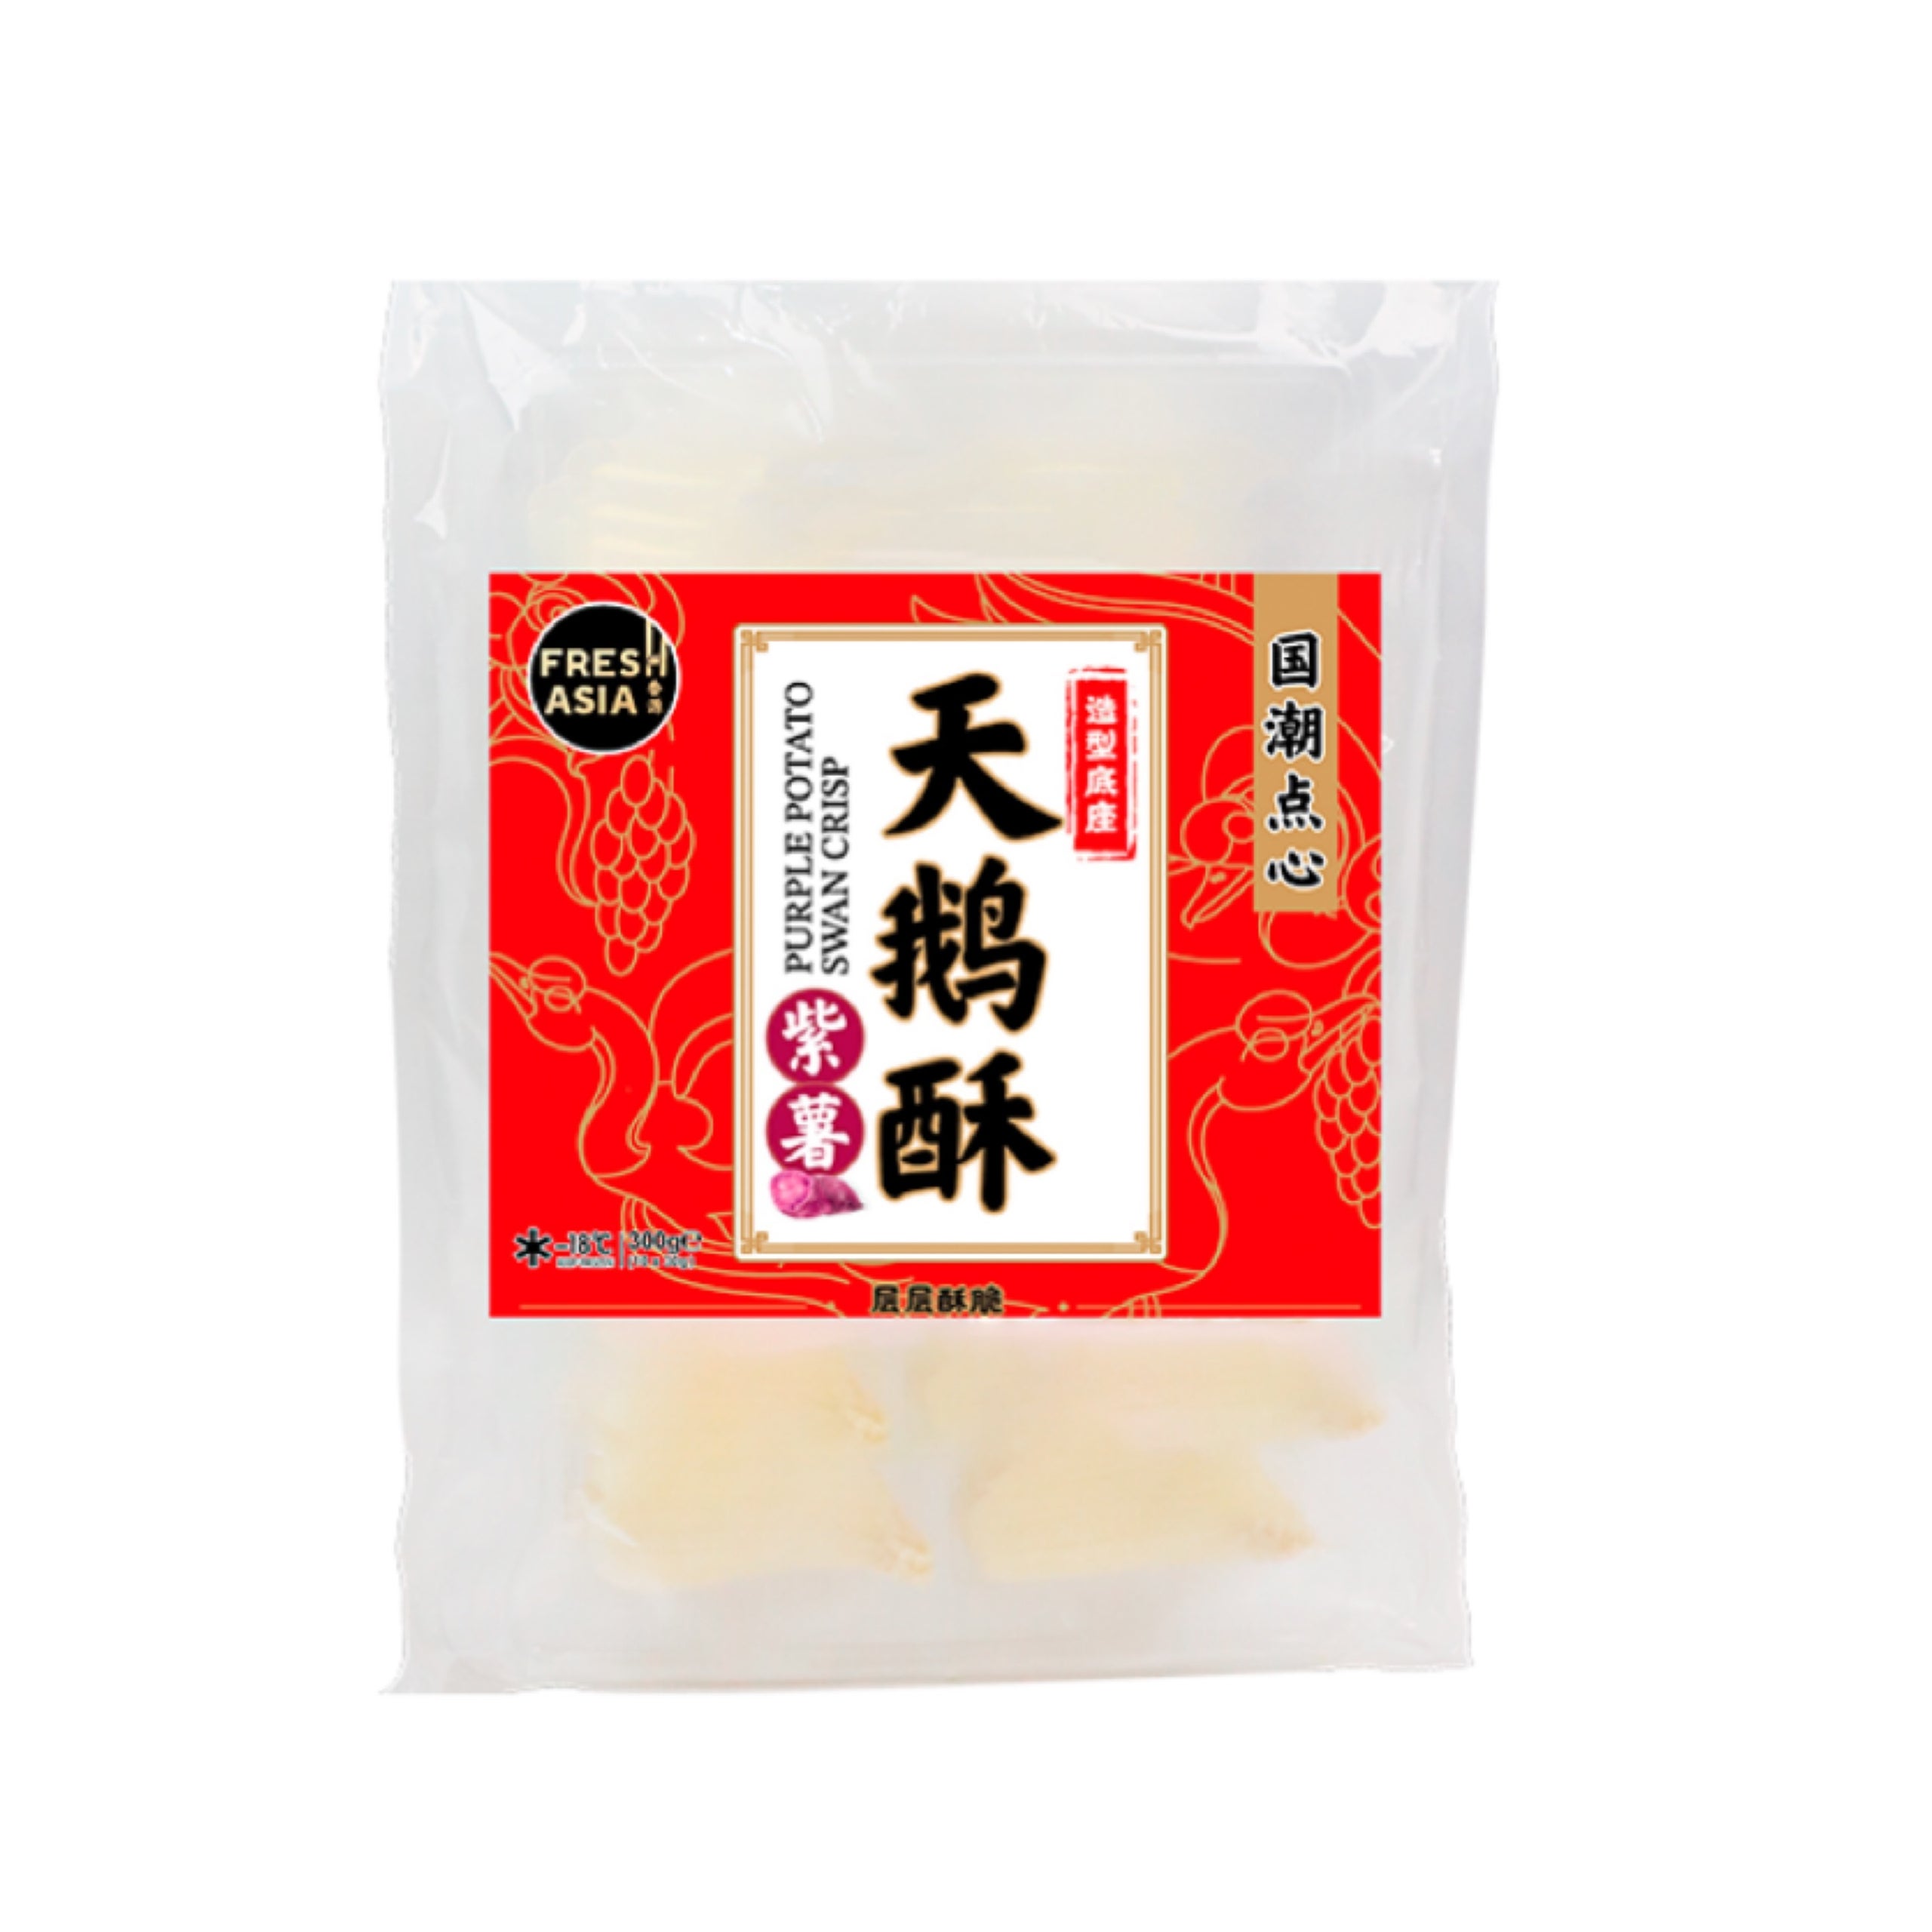 天鹅酥 – 广东可光食品科技有限公司